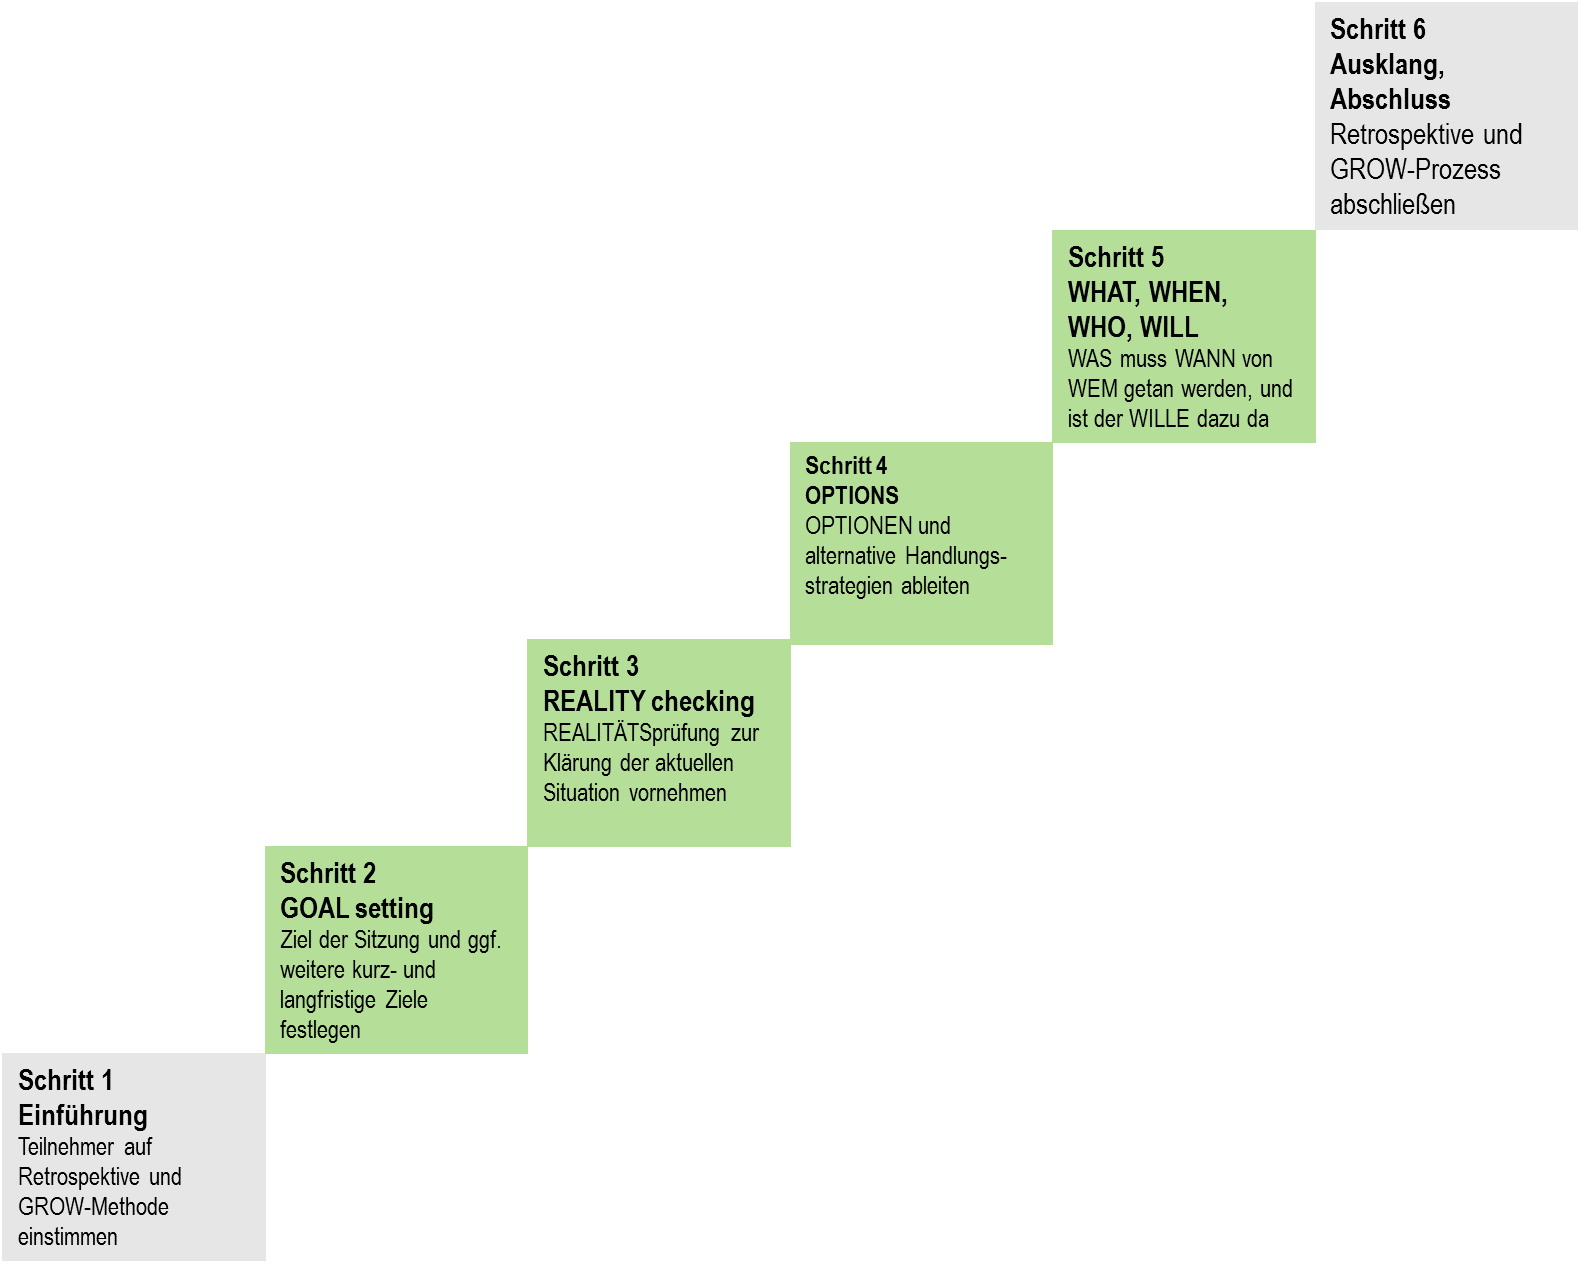 Das GROW-Modell in Anlehnung an Whitmore (vgl. Whitmore 1994, S. 57 f., siehe "Herkunft") Schritt 1 und 6 sind allgemein übliche Schritte, wie sie auch bei anderen strukturierten Workshops zur Einbettung des Hauptteils notwendig sind. Die Bezeichnungen für die Schritte 2, 3, 4 und 5 sind originär den Ausführungen von Whitmore entnommen.